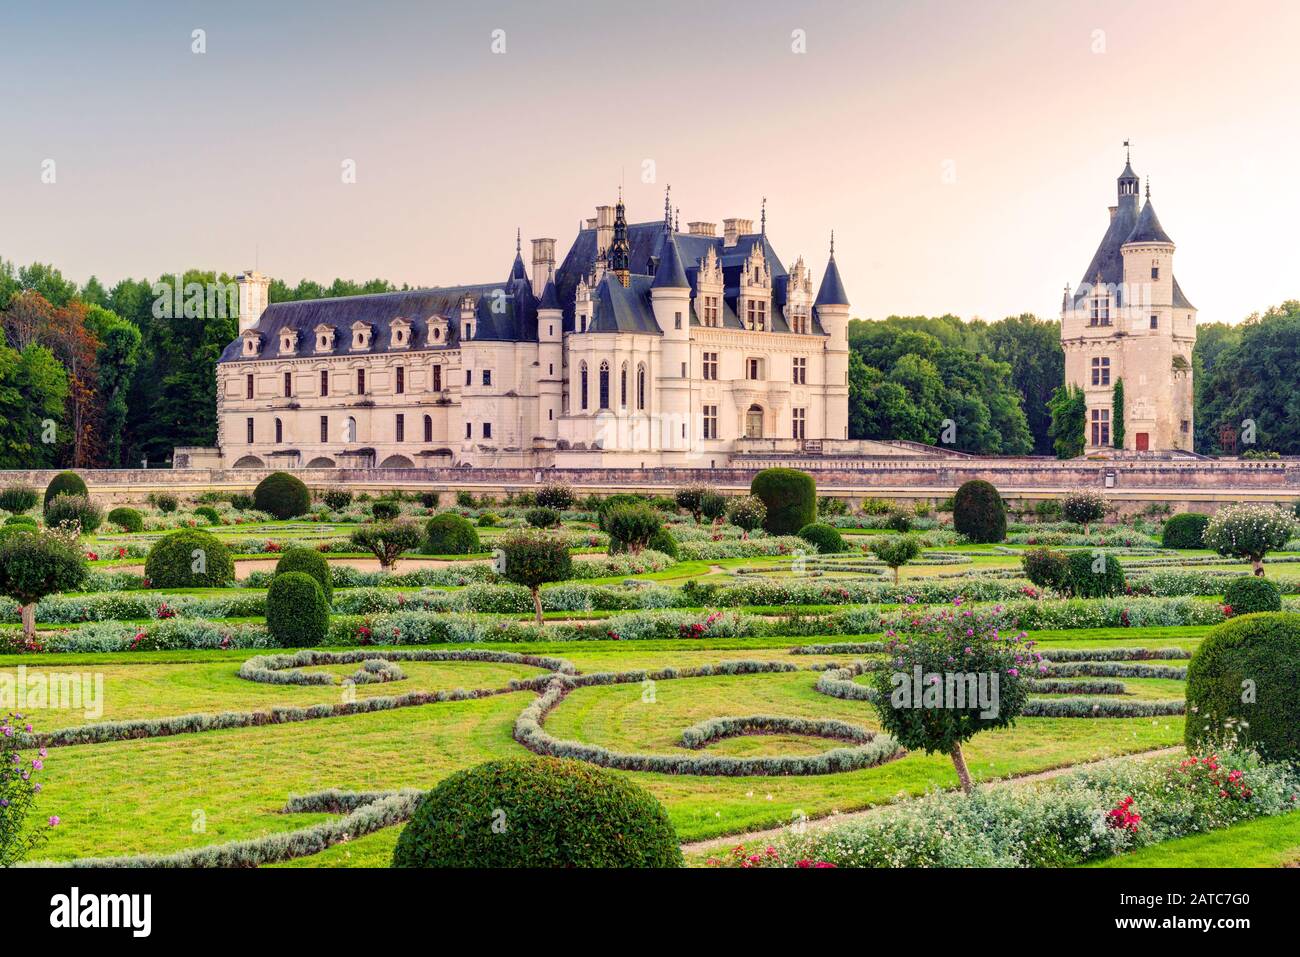 Das Chateau de Chenonceau, Frankreich. Dieses Schloss befindet sich in der Nähe des kleinen Dorfes Chenonceaux im Loiretal, das im 15. Bis 16. Jahrhundert erbaut wurde Stockfoto